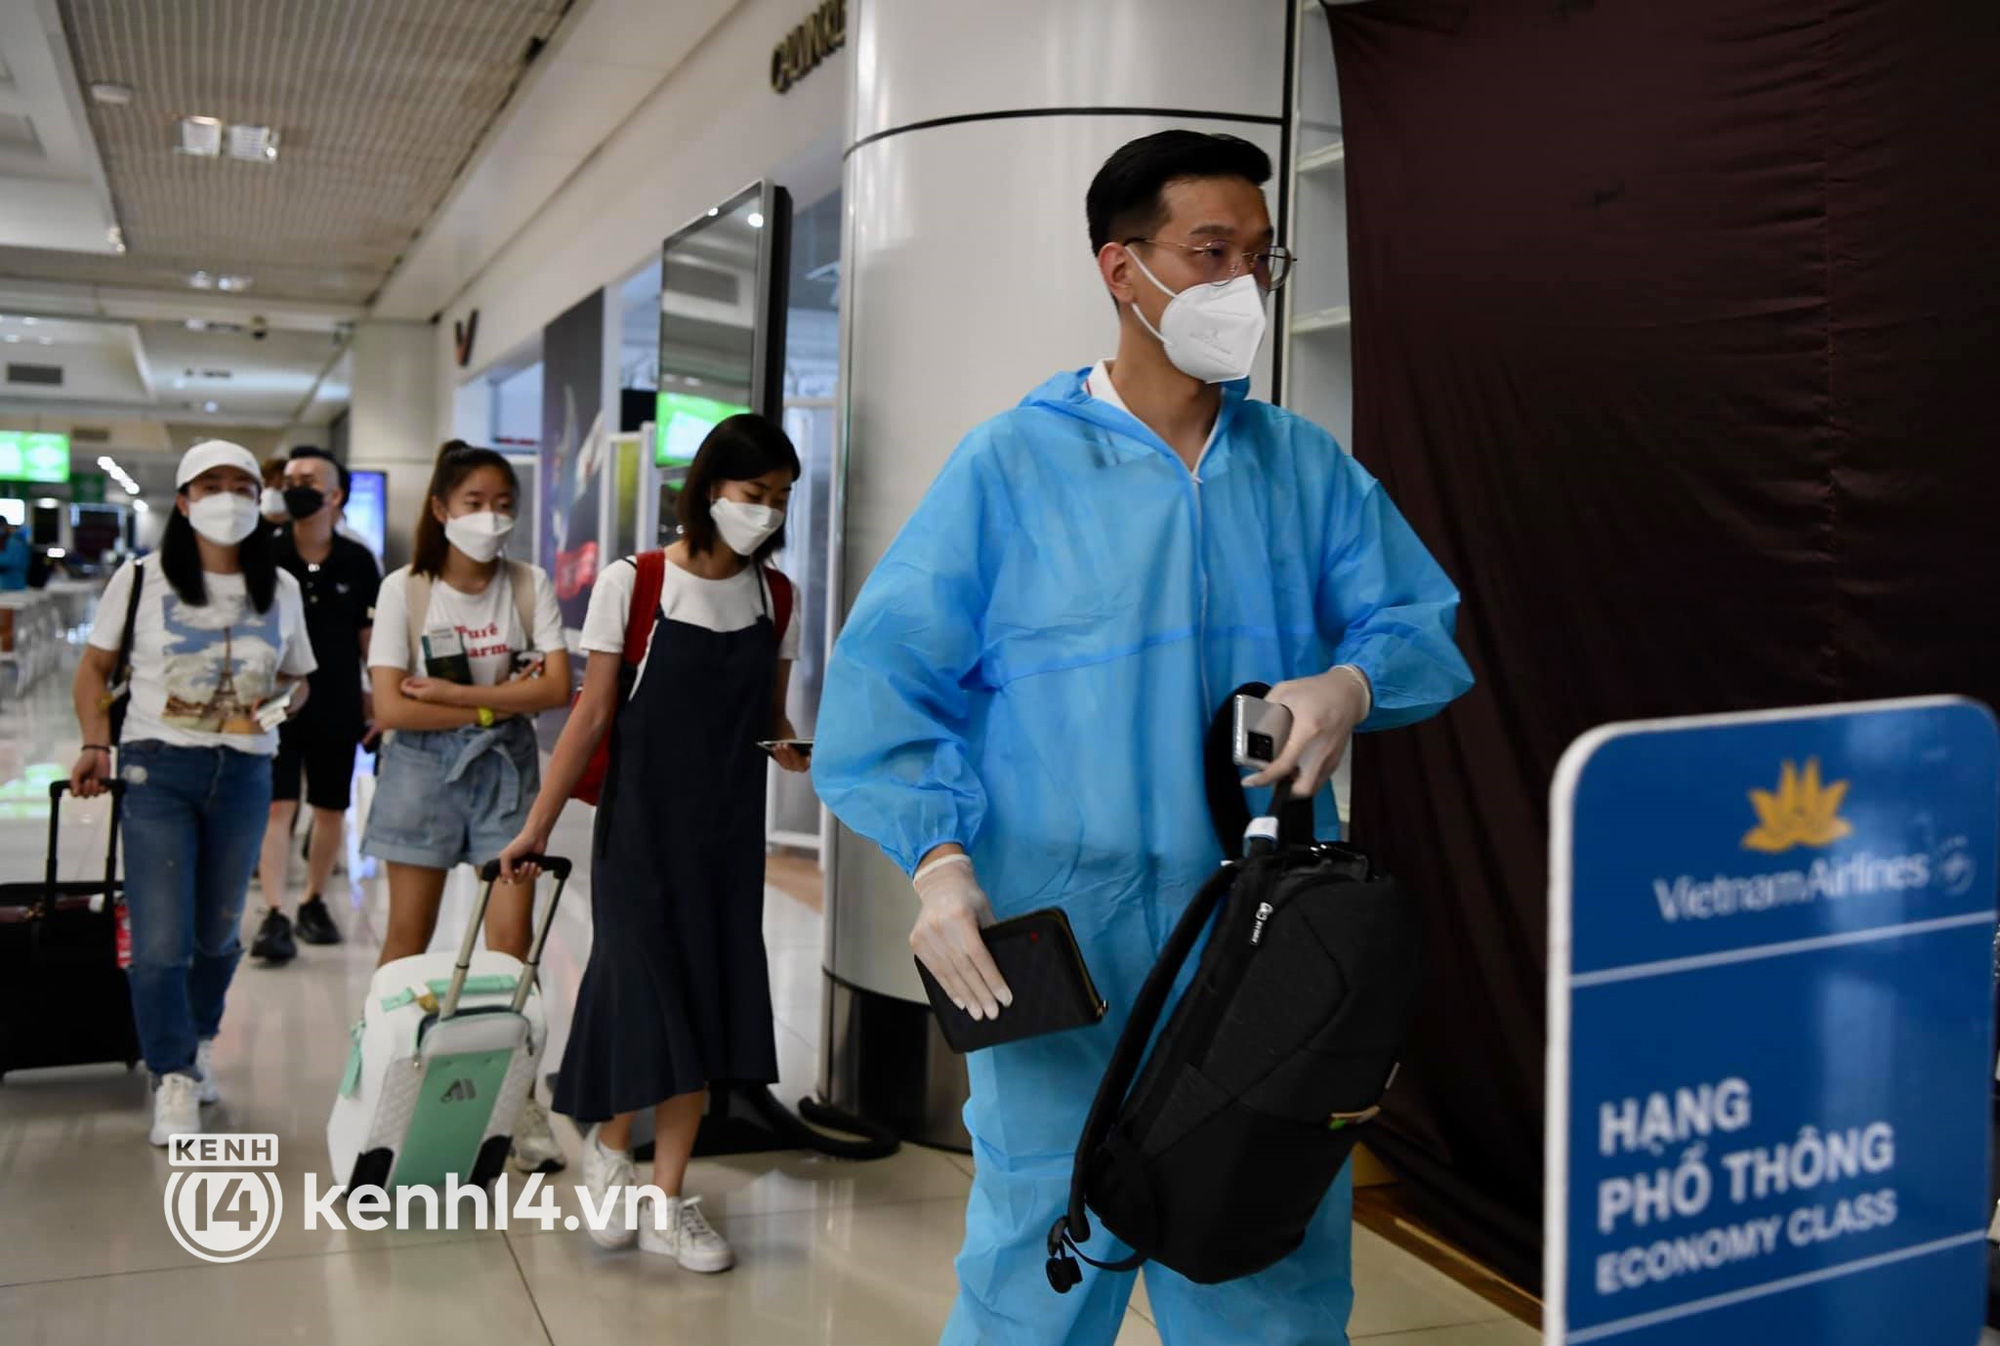 HỎA TỐC: Hà Nội cho phép hành khách bay từ TP.HCM tự theo dõi sức khỏe tại nhà, không phải cách ly tập trung - Ảnh 1.